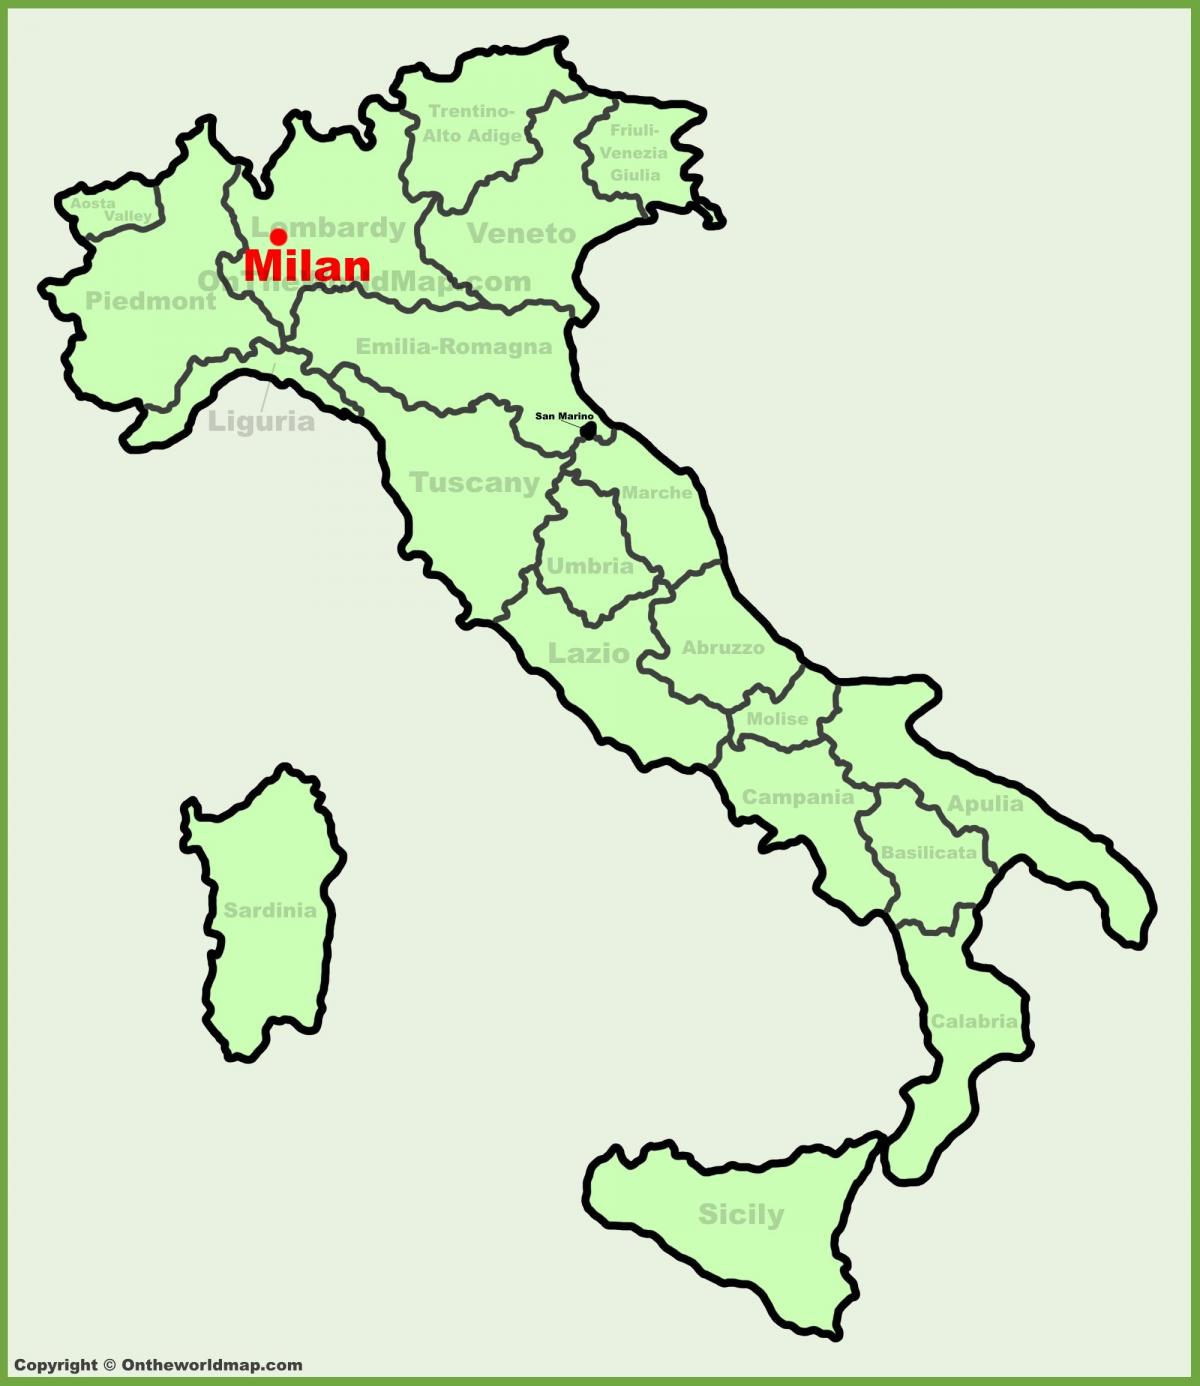 zemljovid italije pokazuje milan